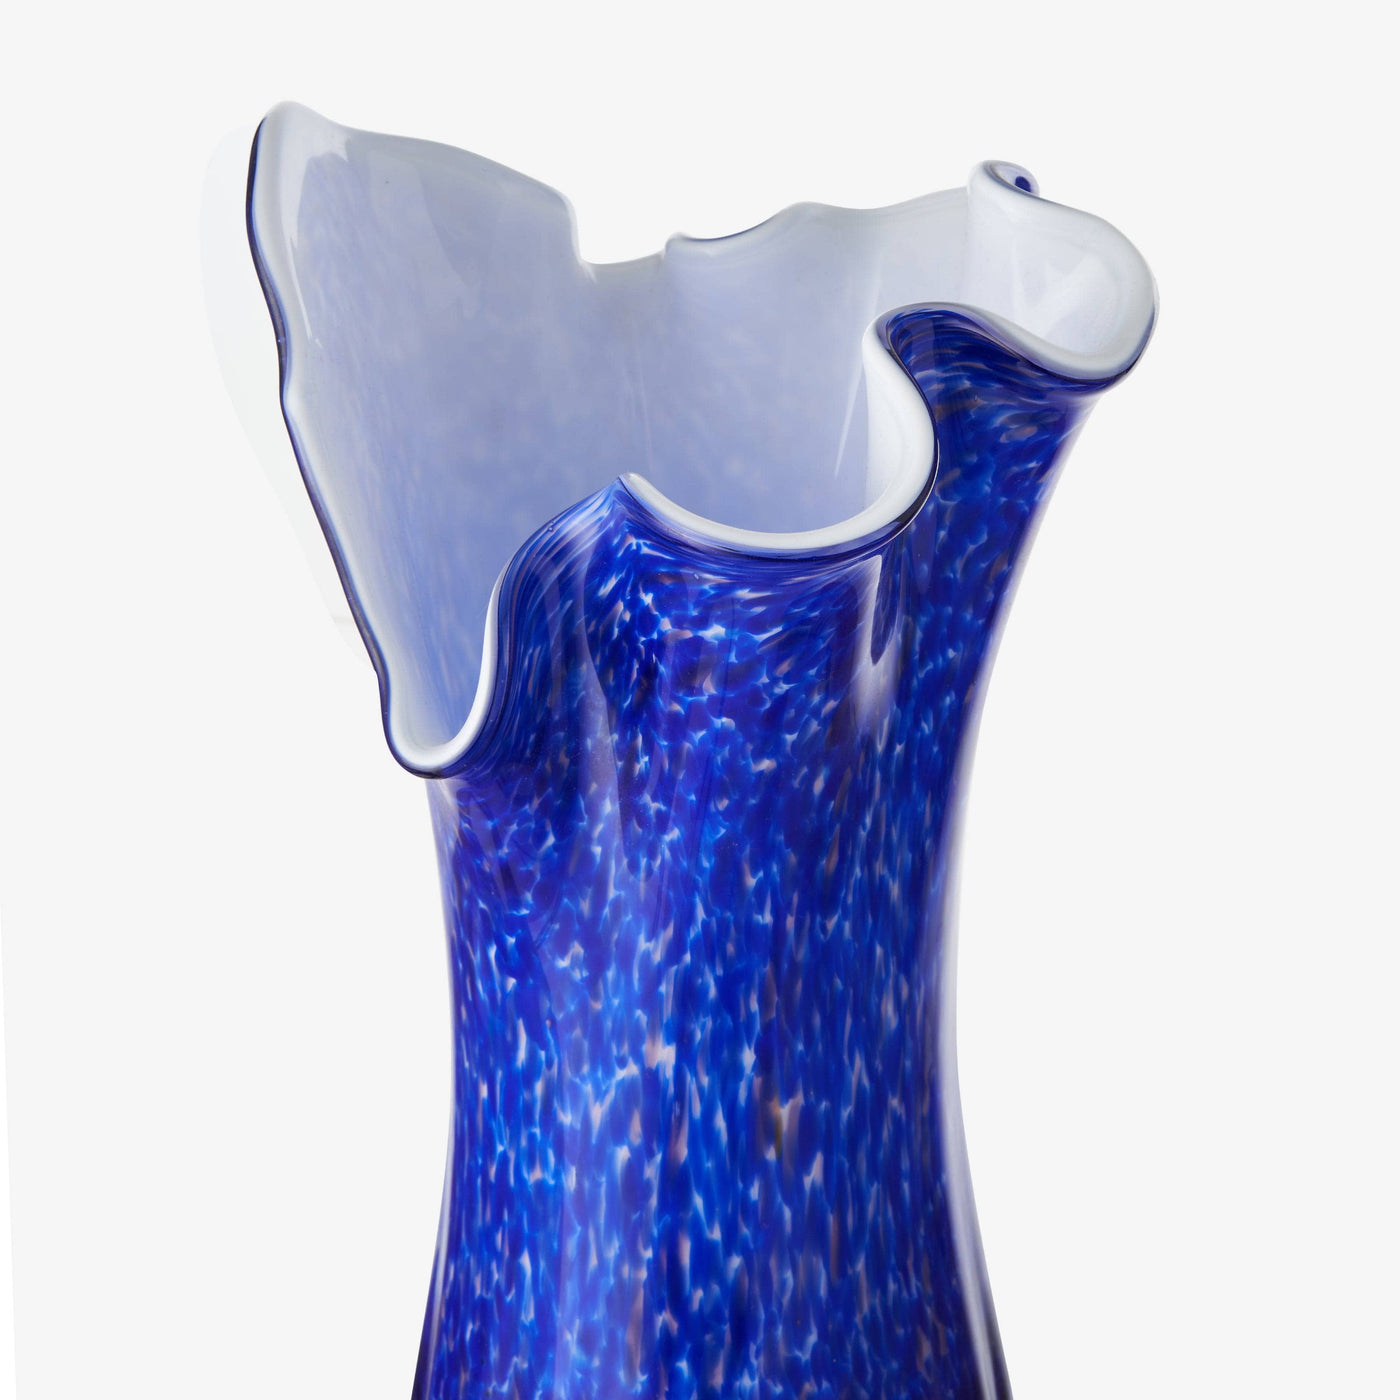 Indicum Vase, Blue Vases sazy.com